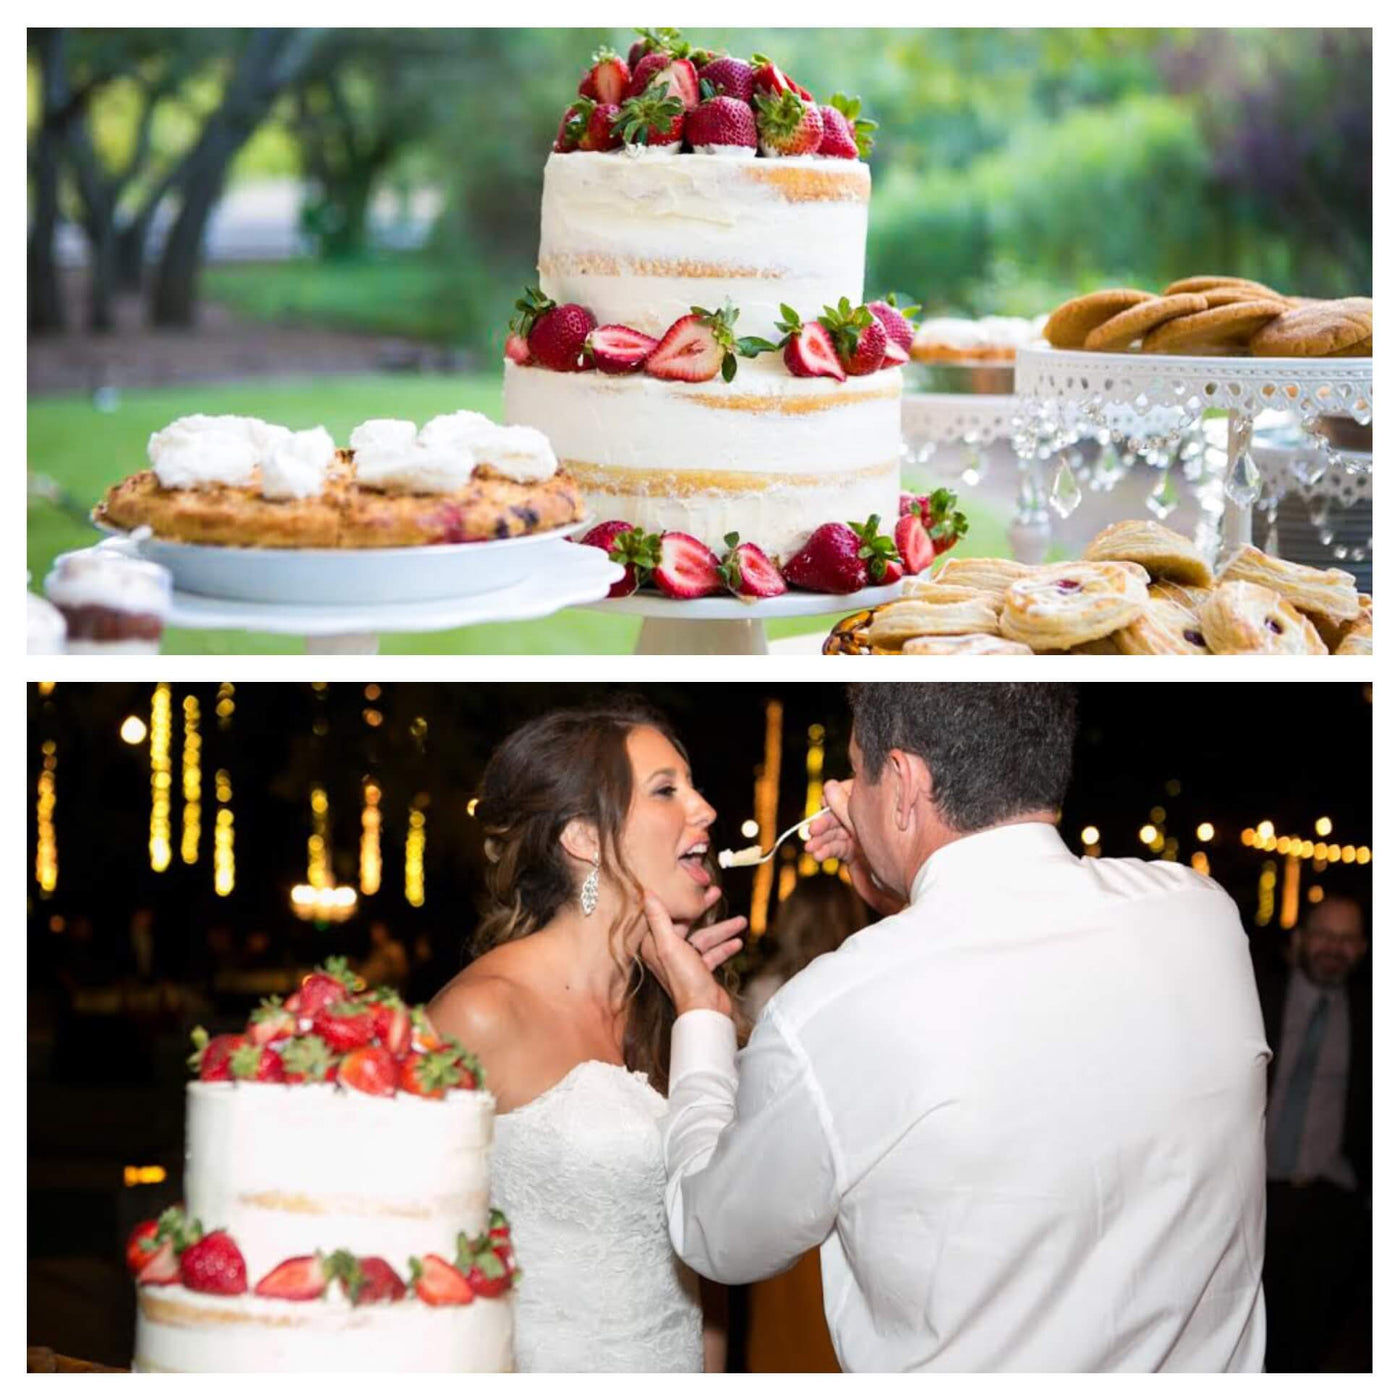 Calamigos Ranch Rustic Wedding Table - Sweet E's Bake Shop